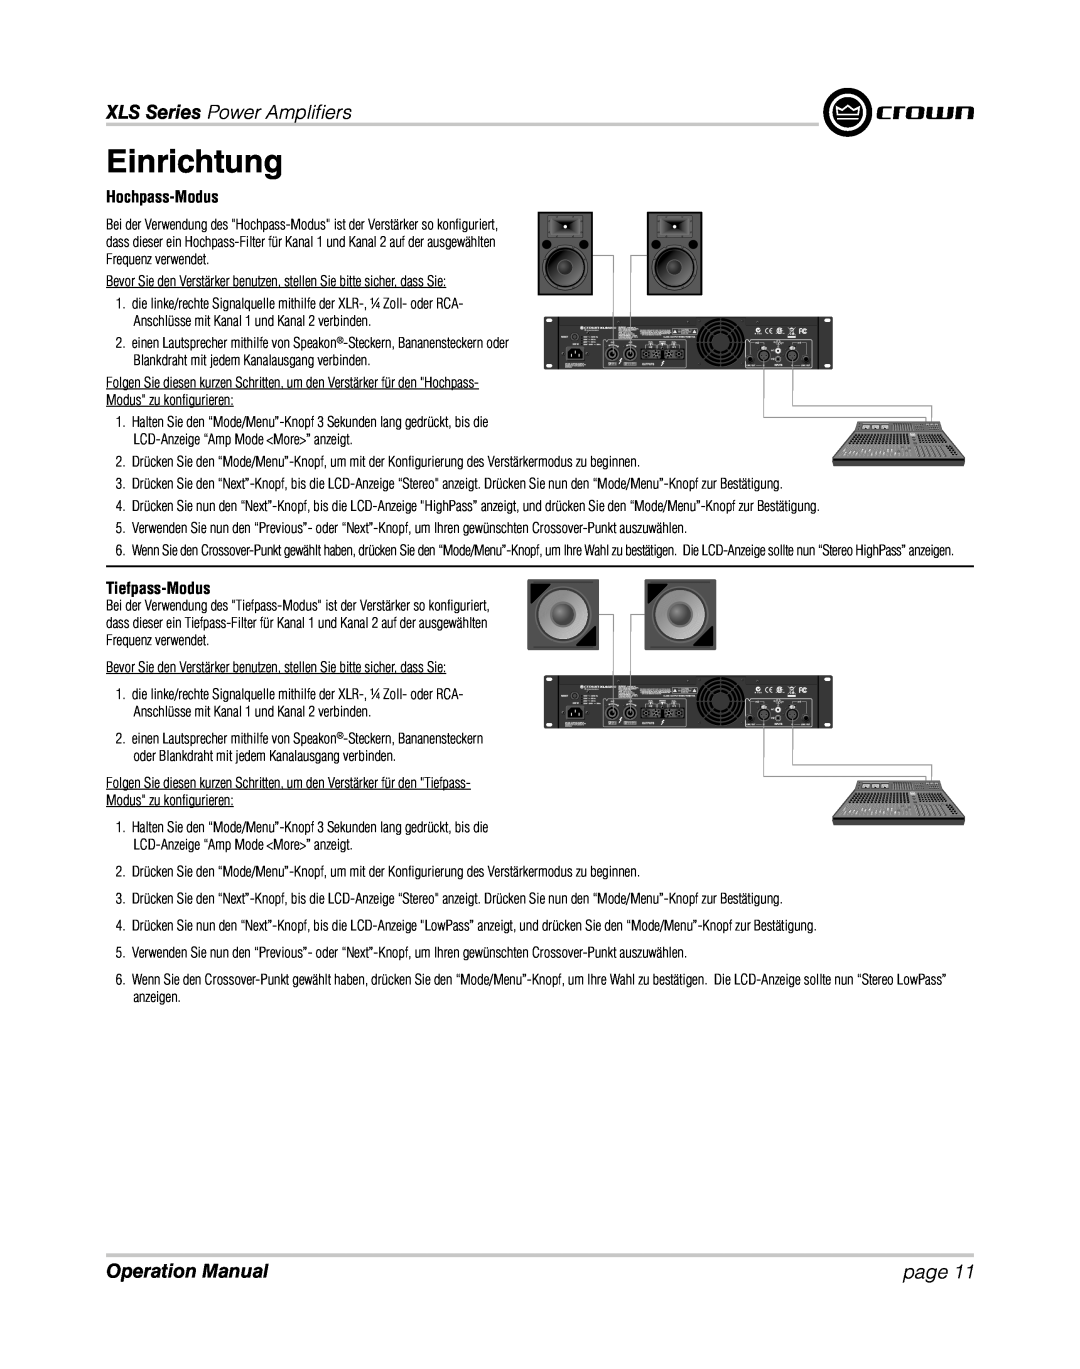 Crown XLS 1000 operation manual Hochpass-Modus, Tiefpass-Modus, Einrichtung, XLS Series Power Ampliﬁ ers, page 